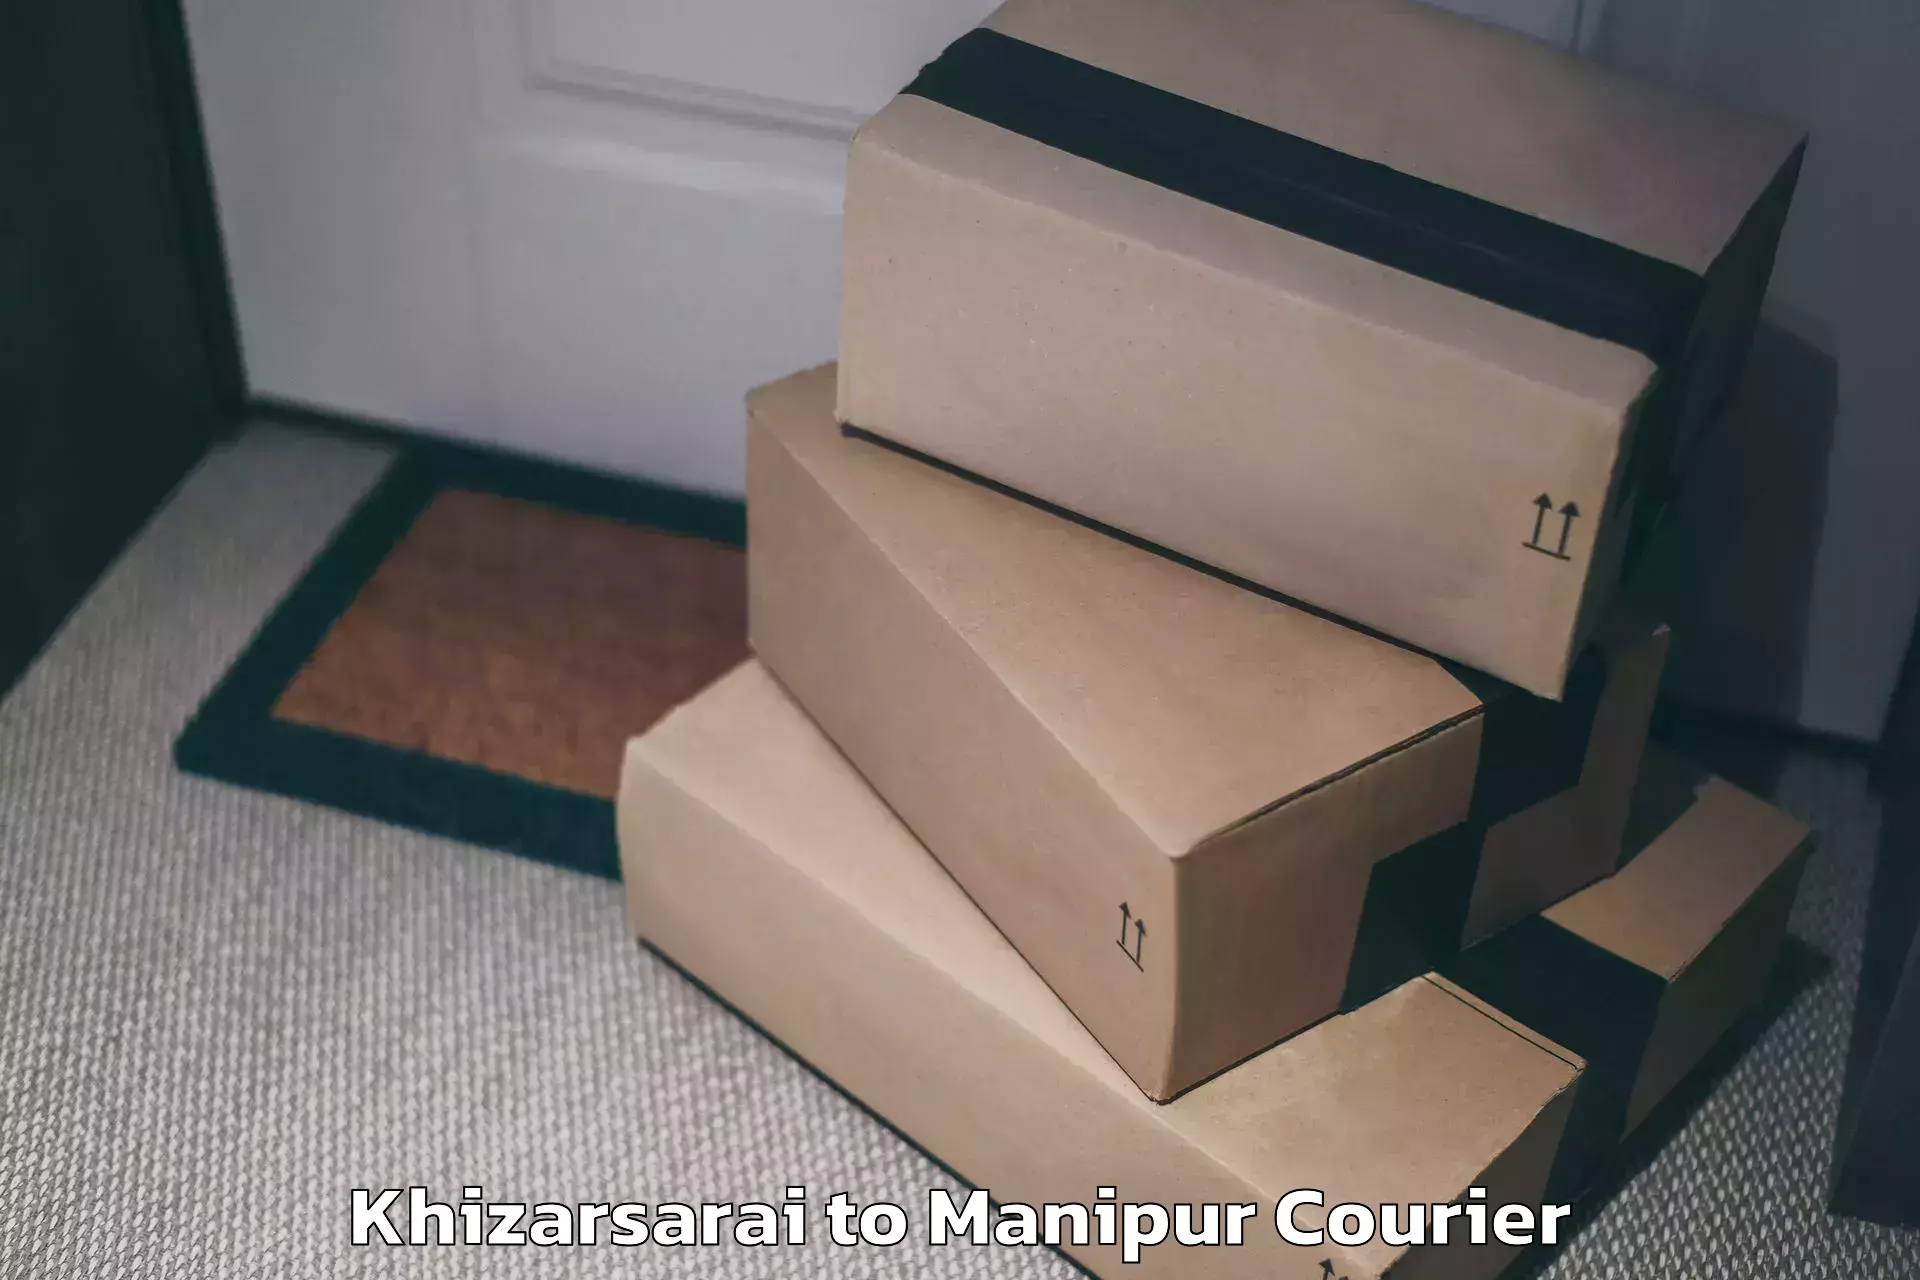 Luggage delivery news Khizarsarai to Moirang